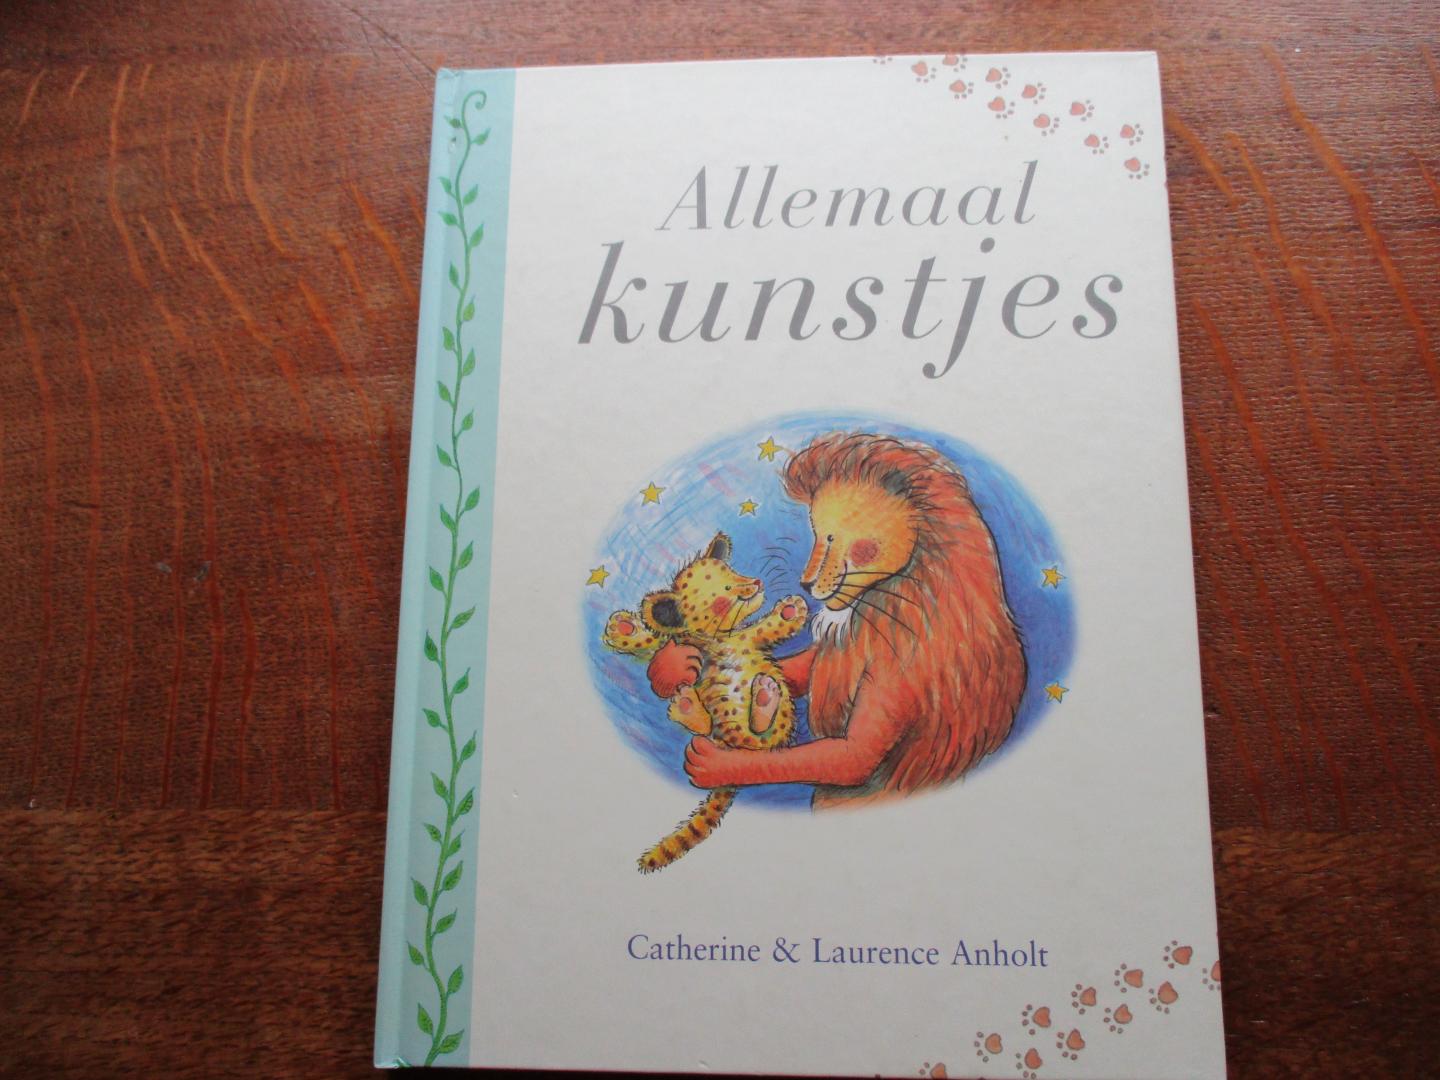 Anholt, Catherine & Laurence - Allemaal kunstjes - Het boek dat peuters groot en sterk maakt. Samen lekker lezen, kijken en lachen om de kunstjes die Welpje wil doen.